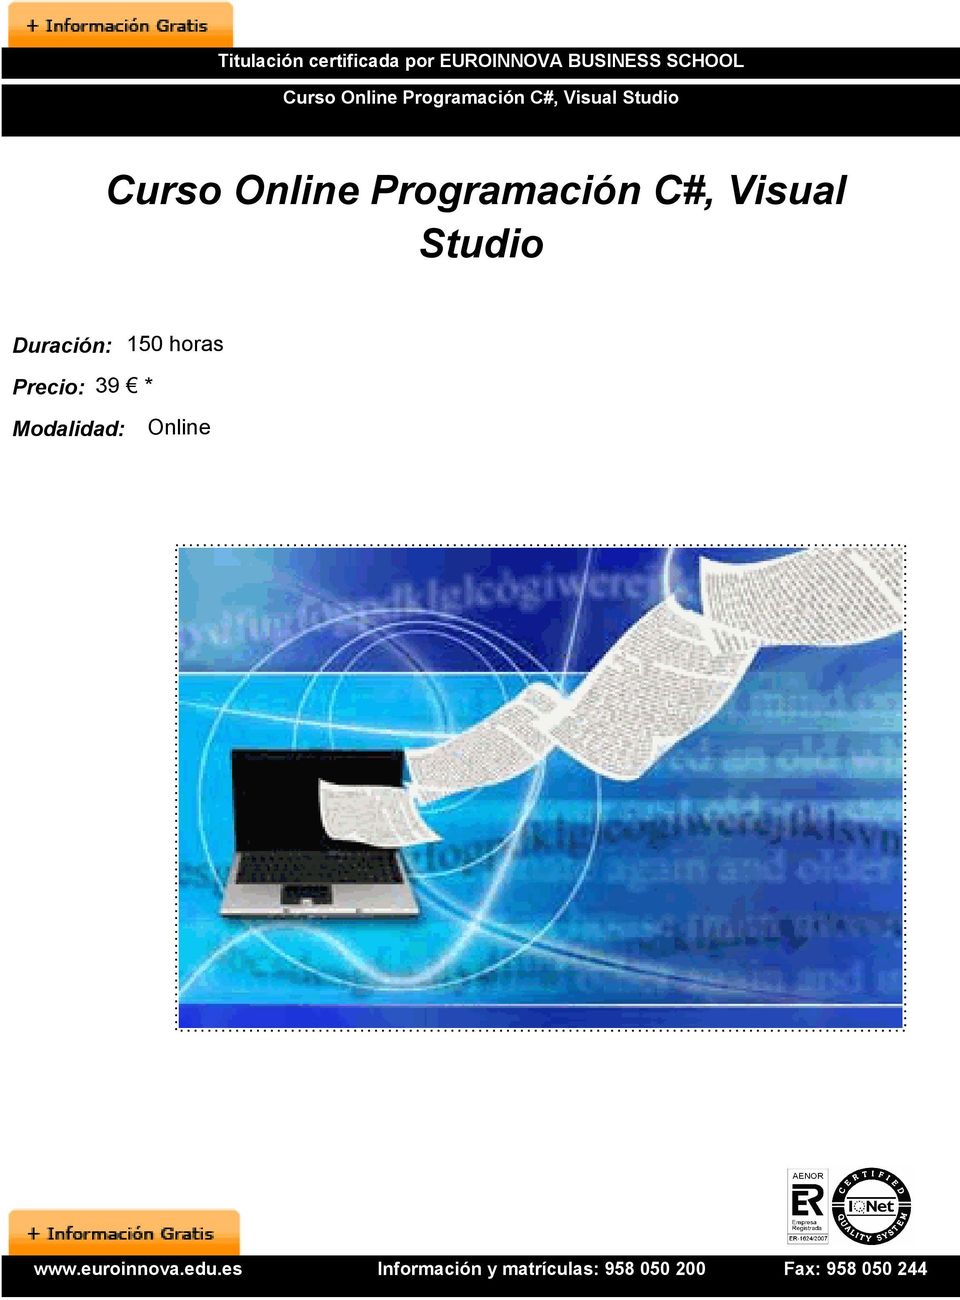 Studio Curso Online Programación C#, Visual